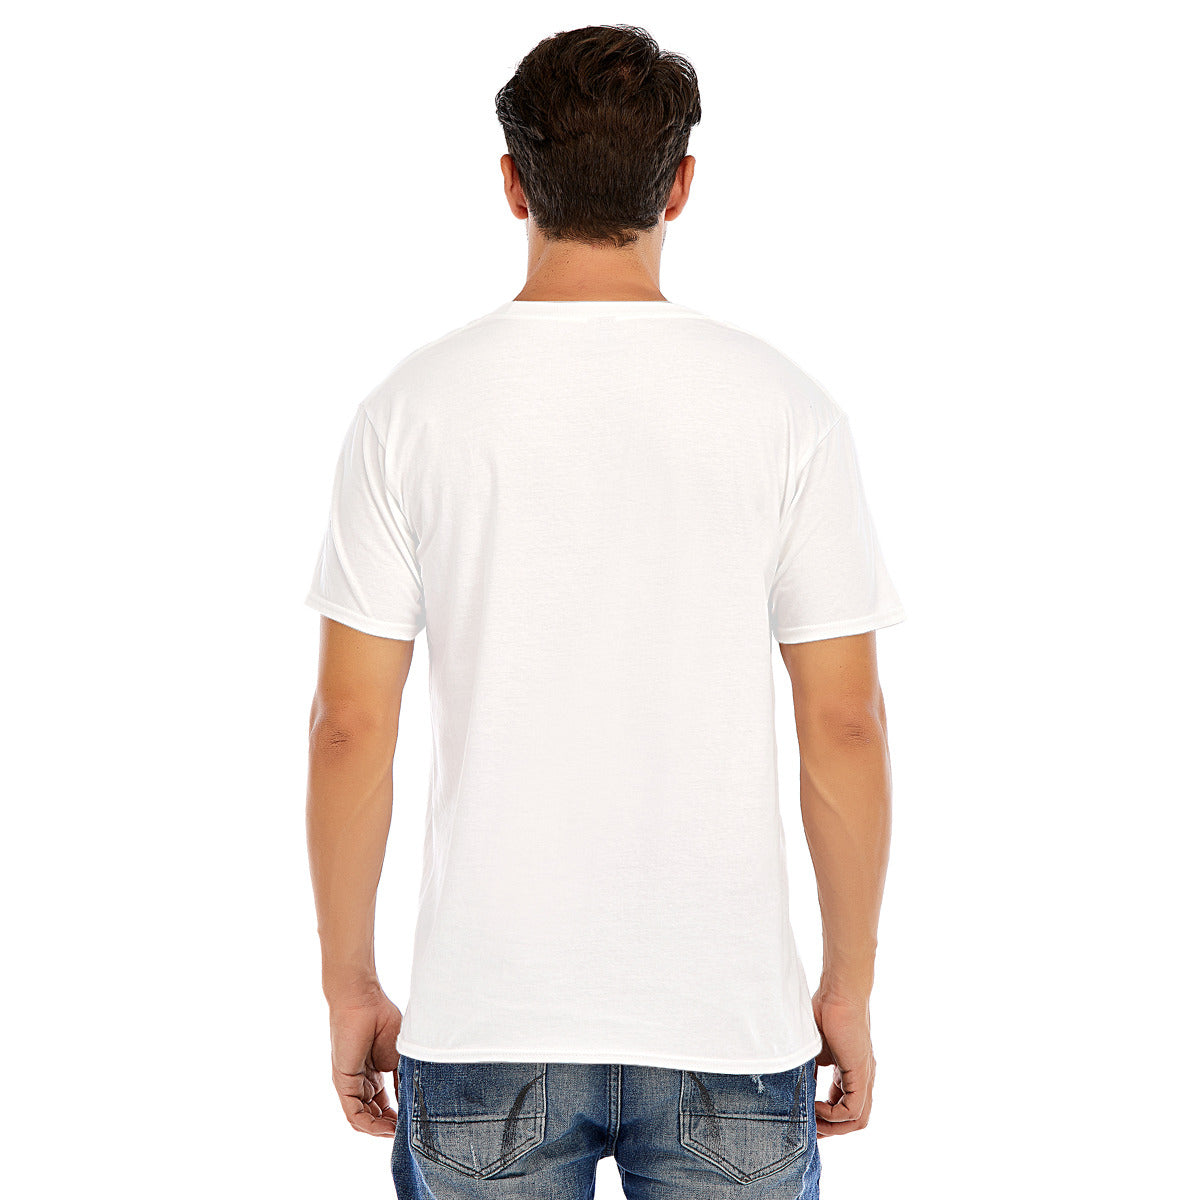 Isla Holbox 99 -- Unisex O-neck Short Sleeve T-shirt